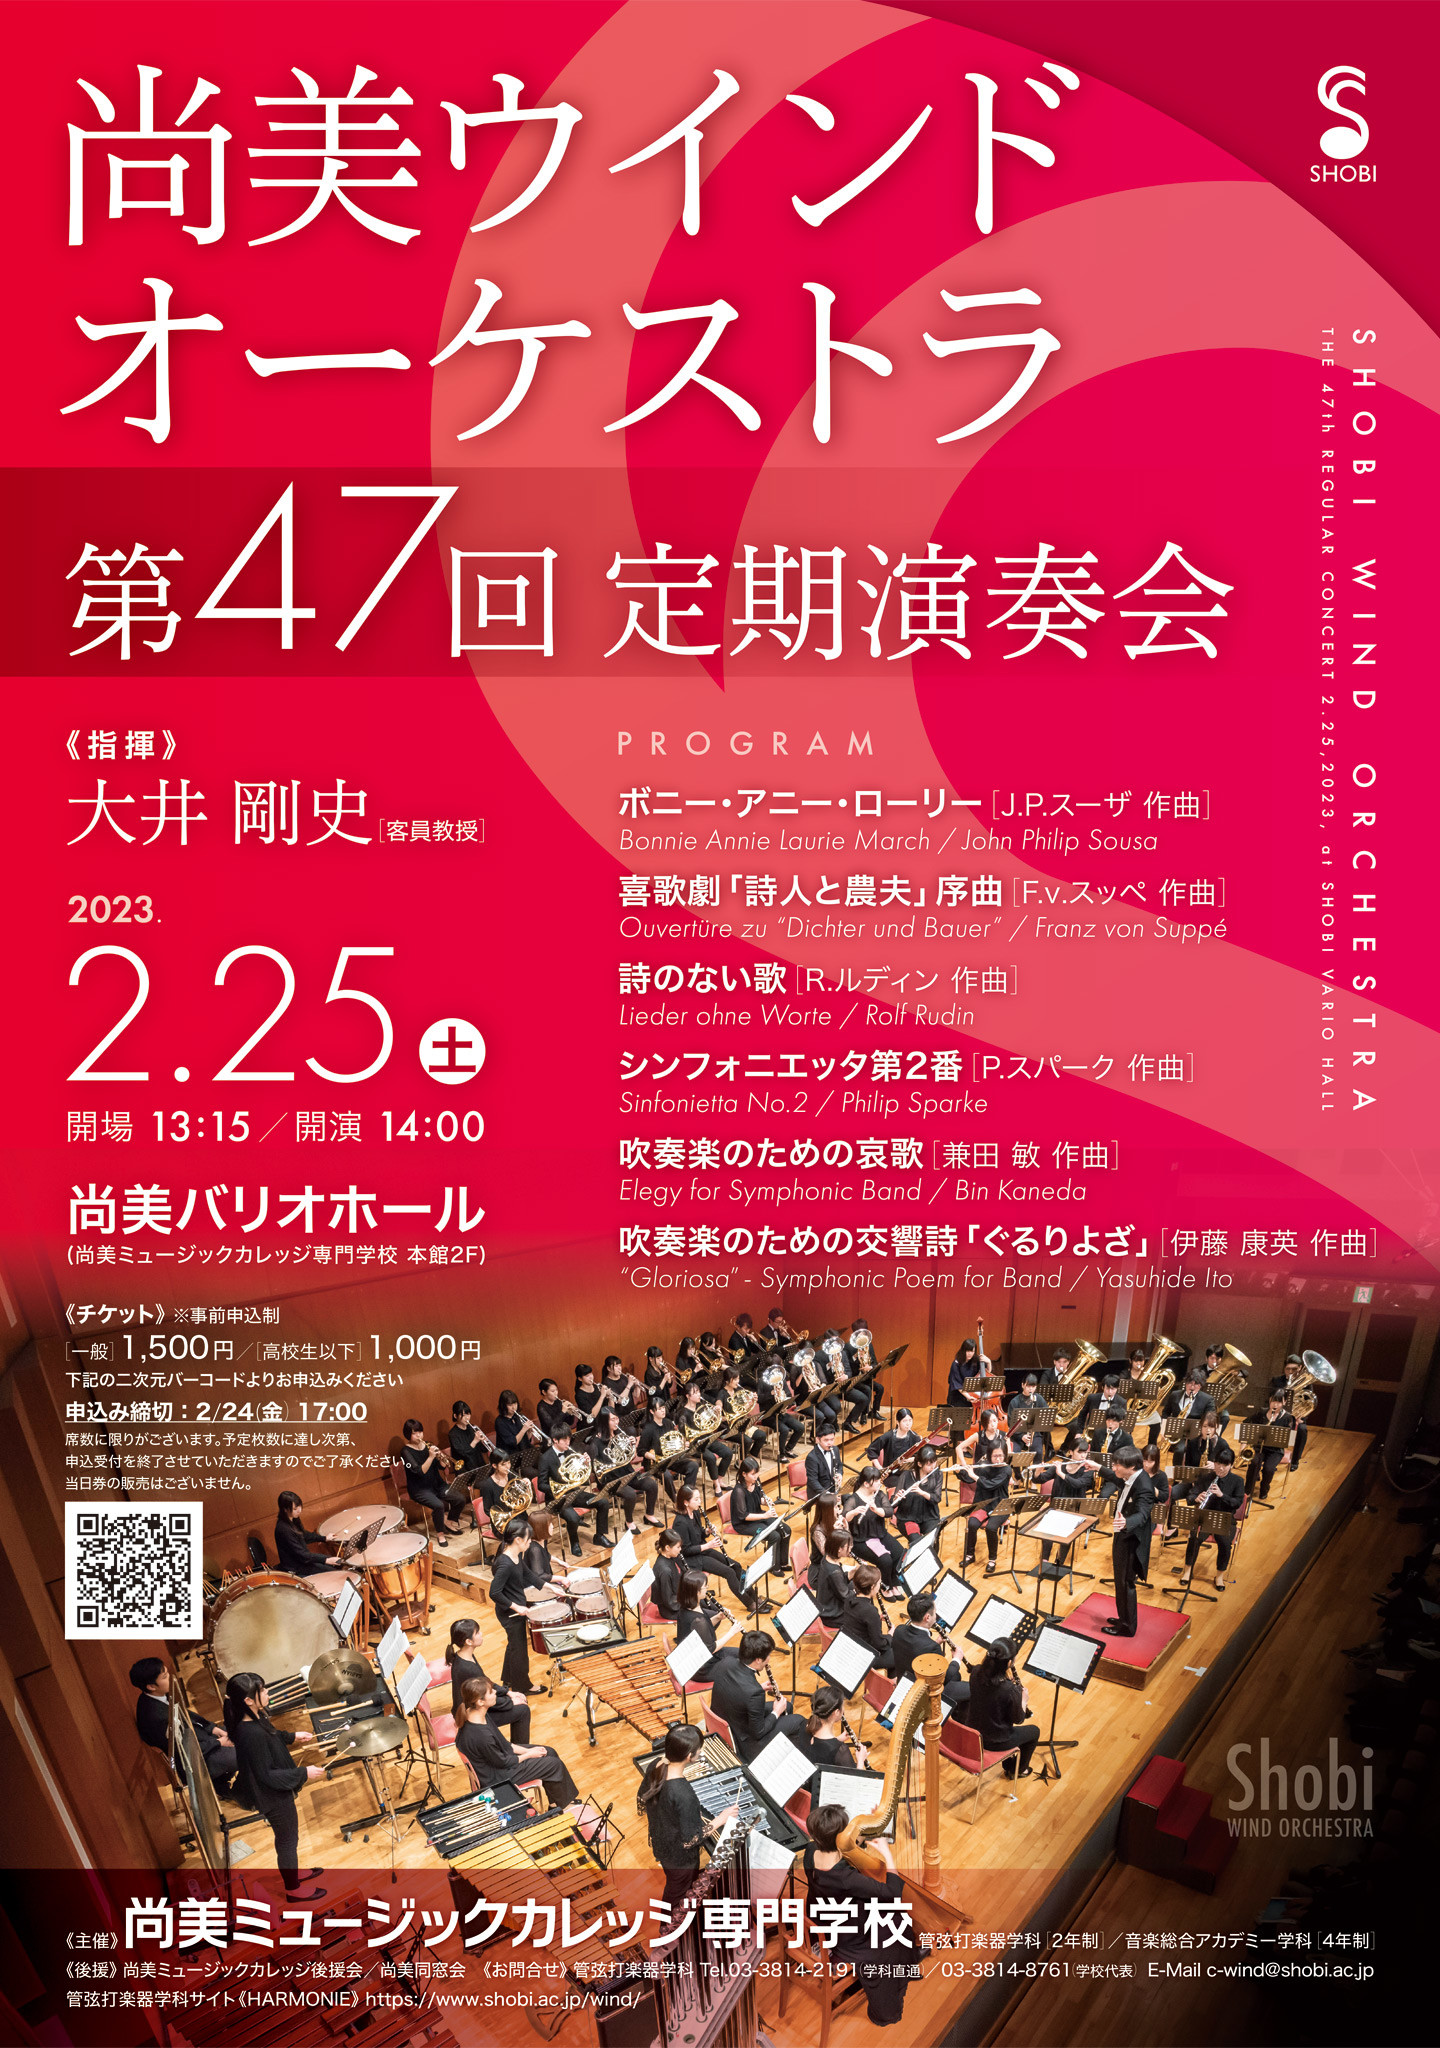 【2月25日開催】尚美ウインドオーケストラ 第47回定期演奏会